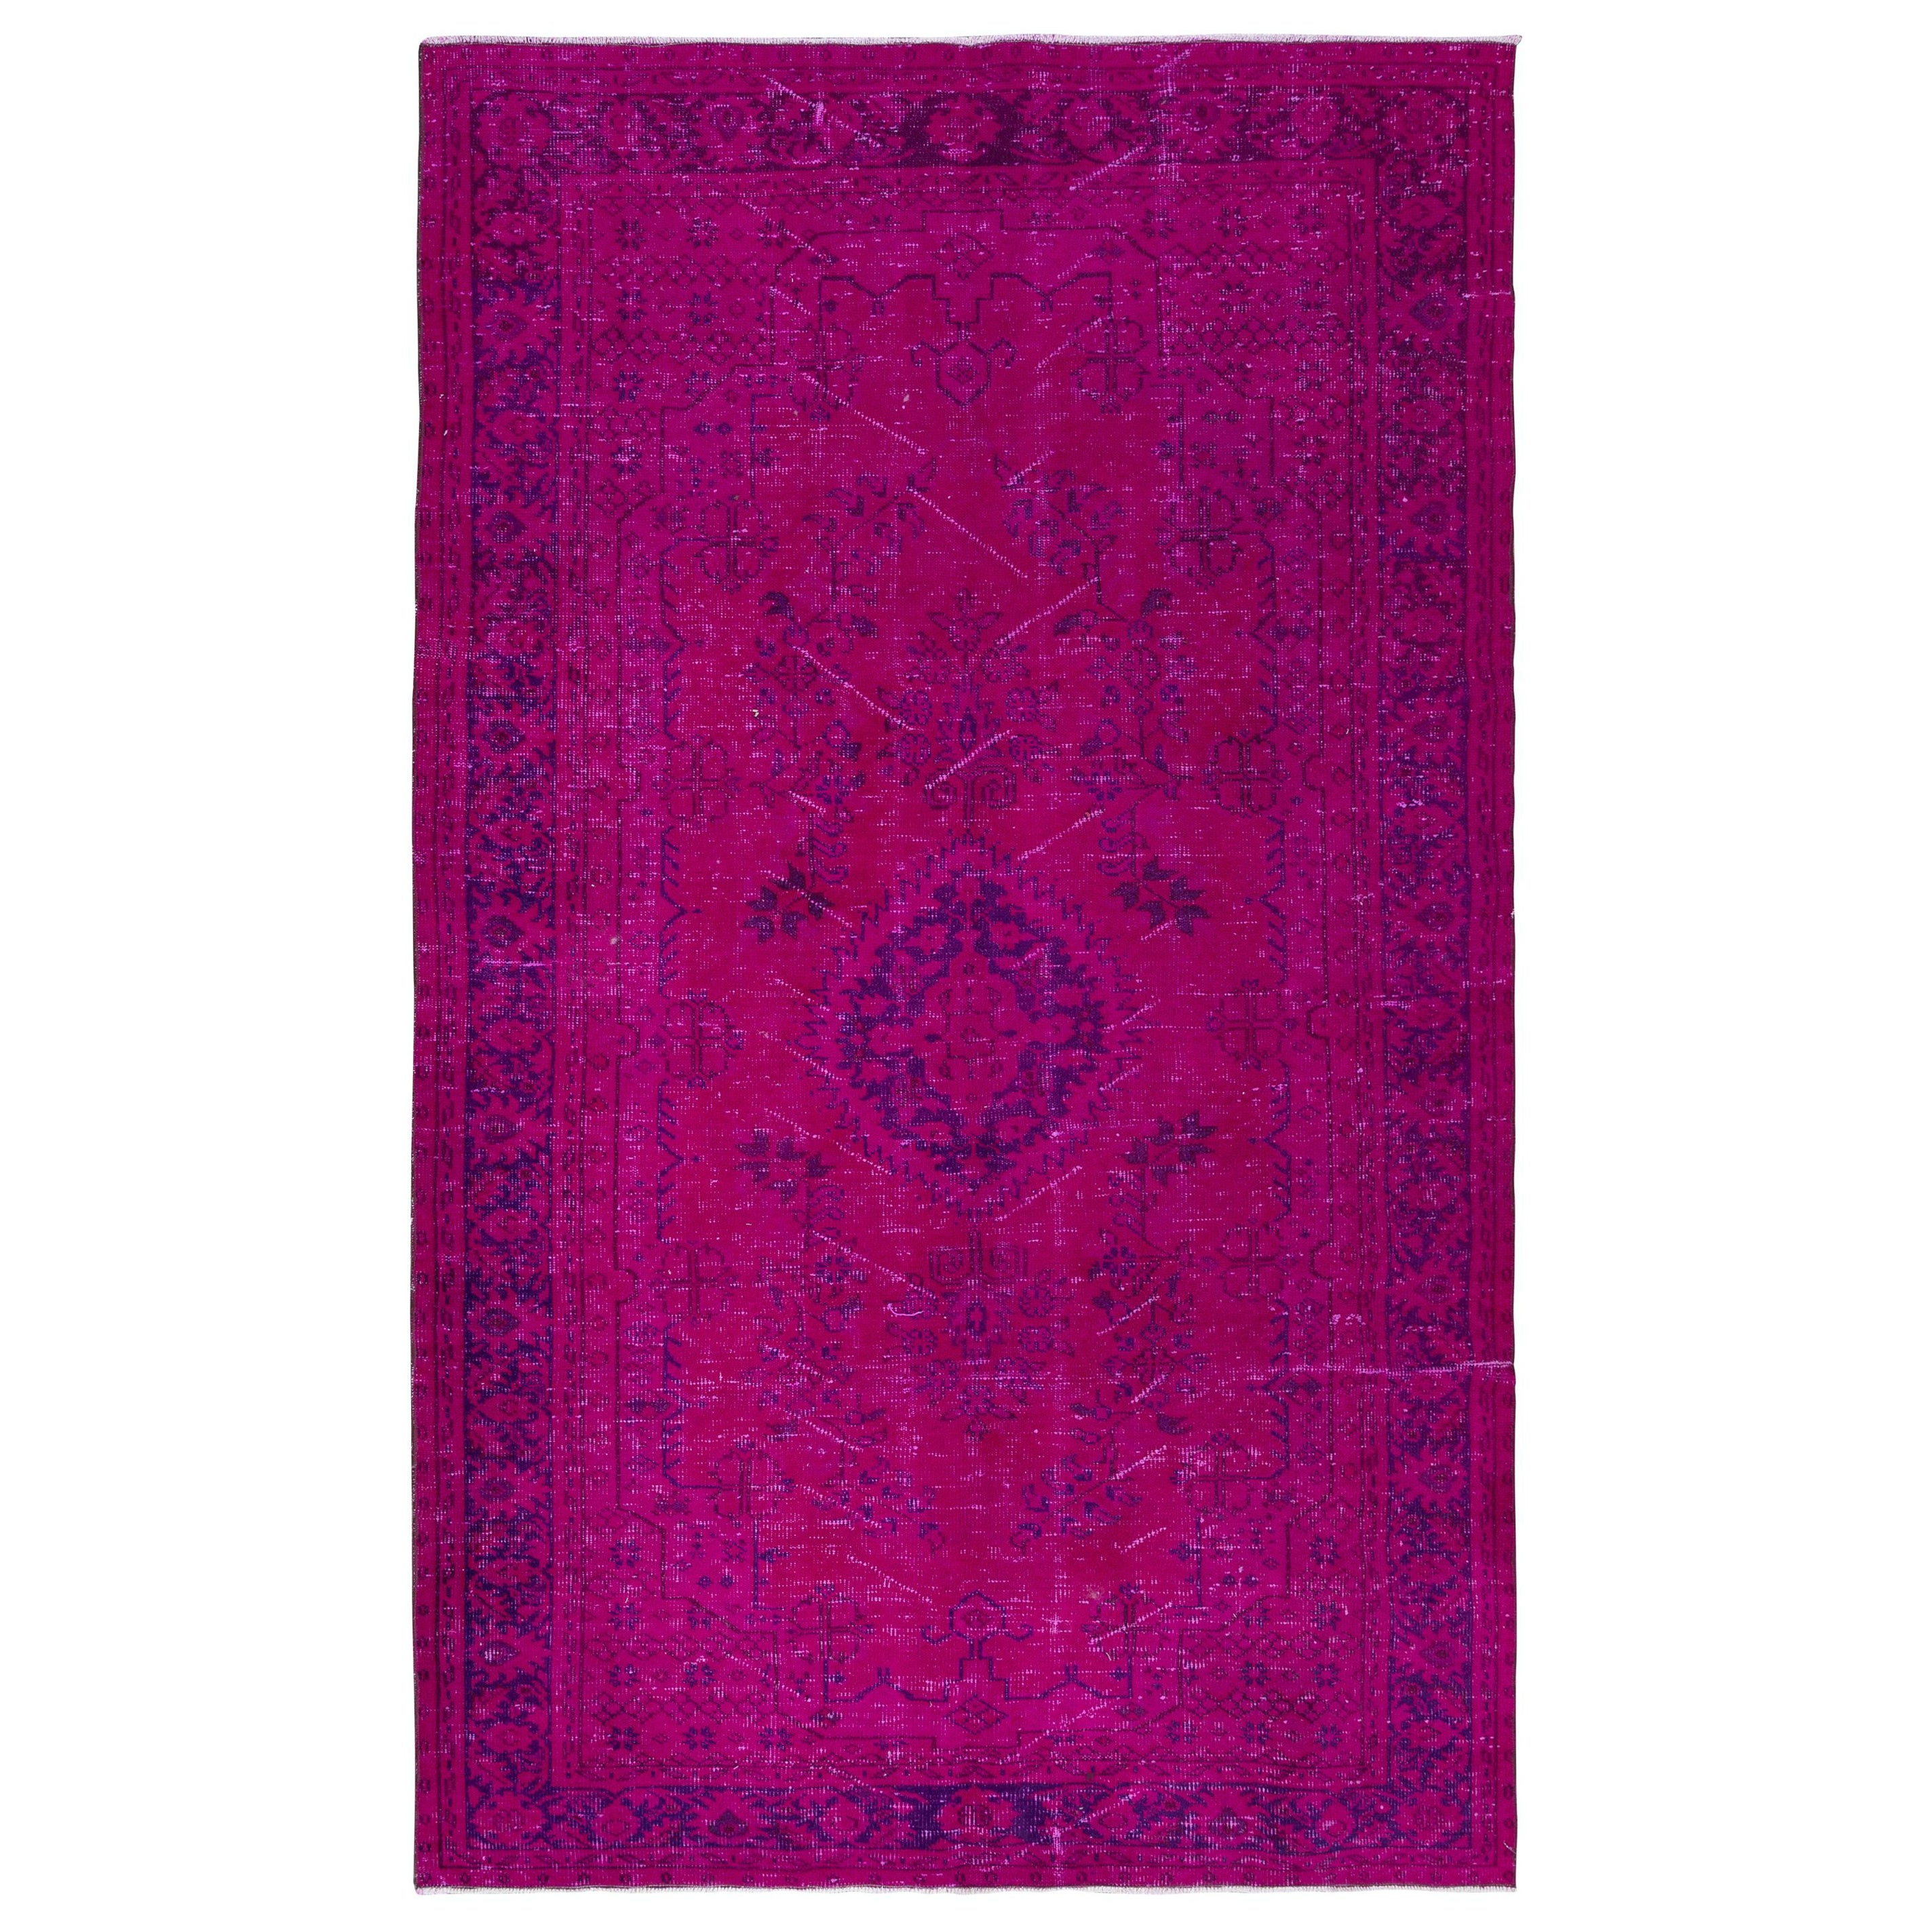 6x9.8 Ft Contemporary Pink Area Rug, Handgefertigt in der Türkei, Wohnzimmerteppich